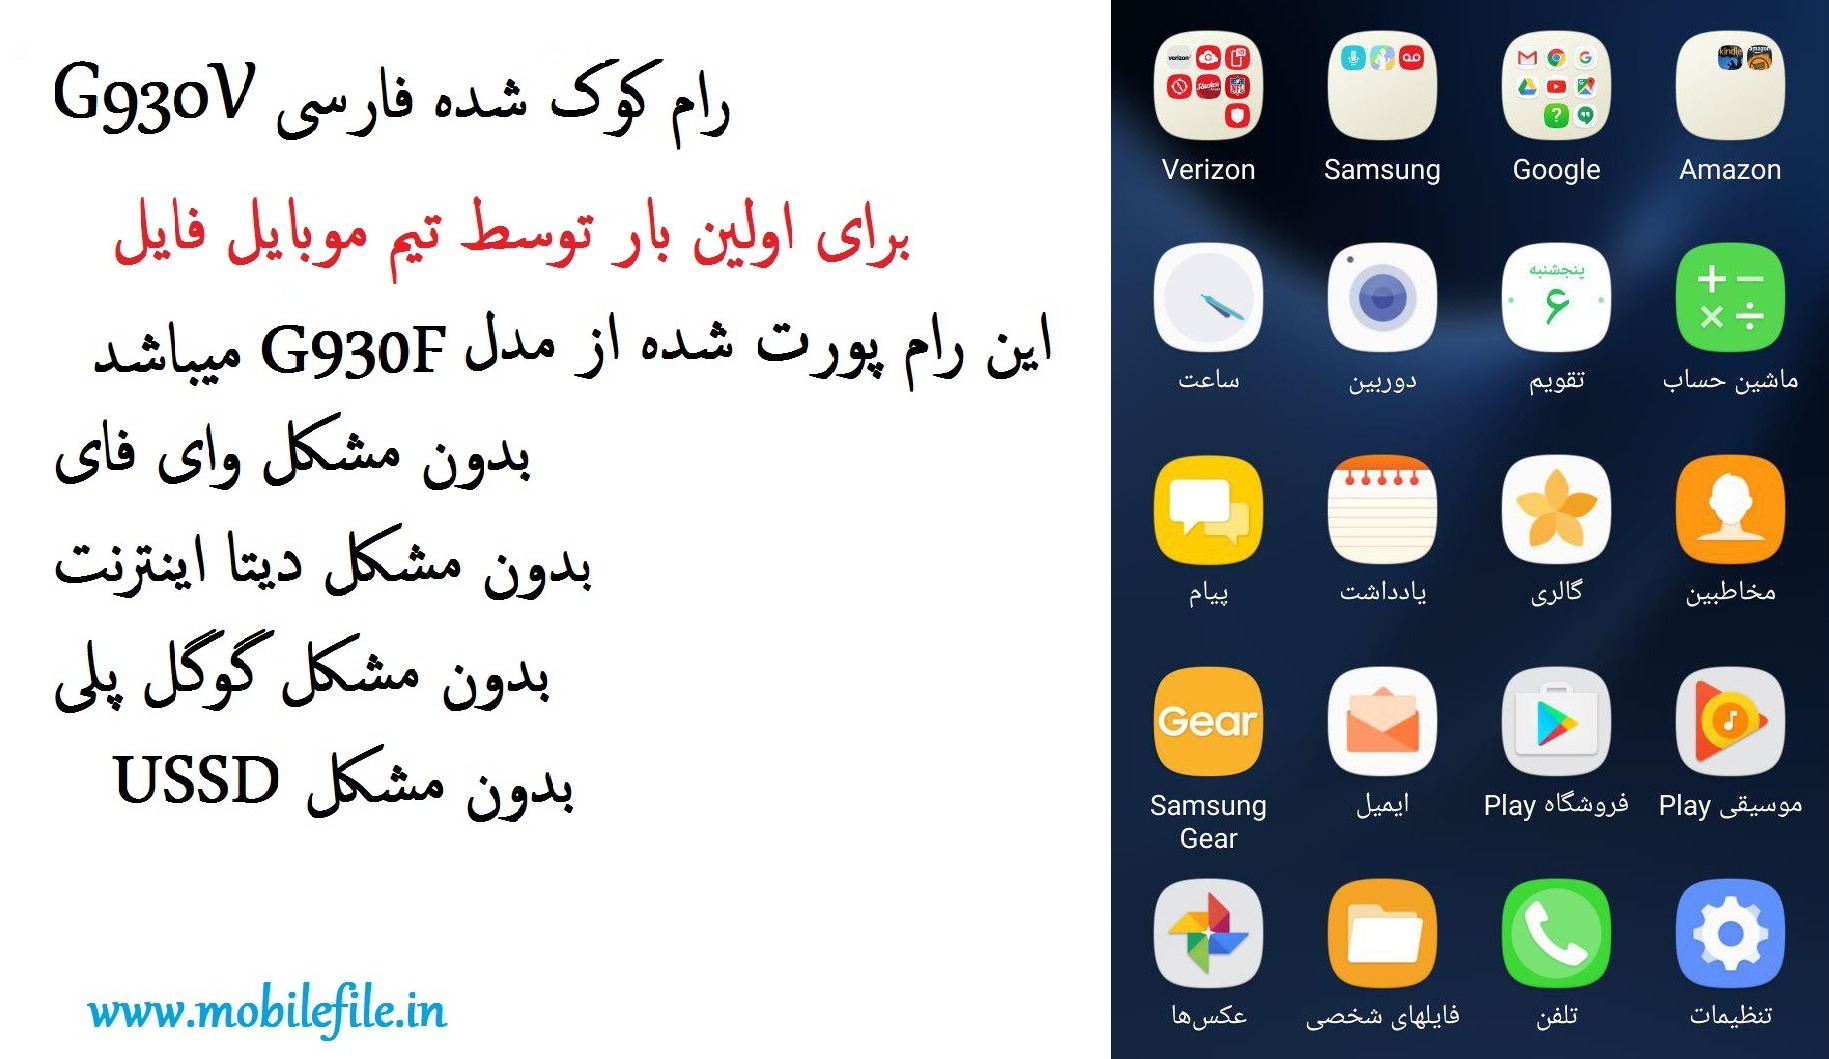 رام فول فارسی G930V اندروید 6.0.1 بدون مشکل شبکه 4G